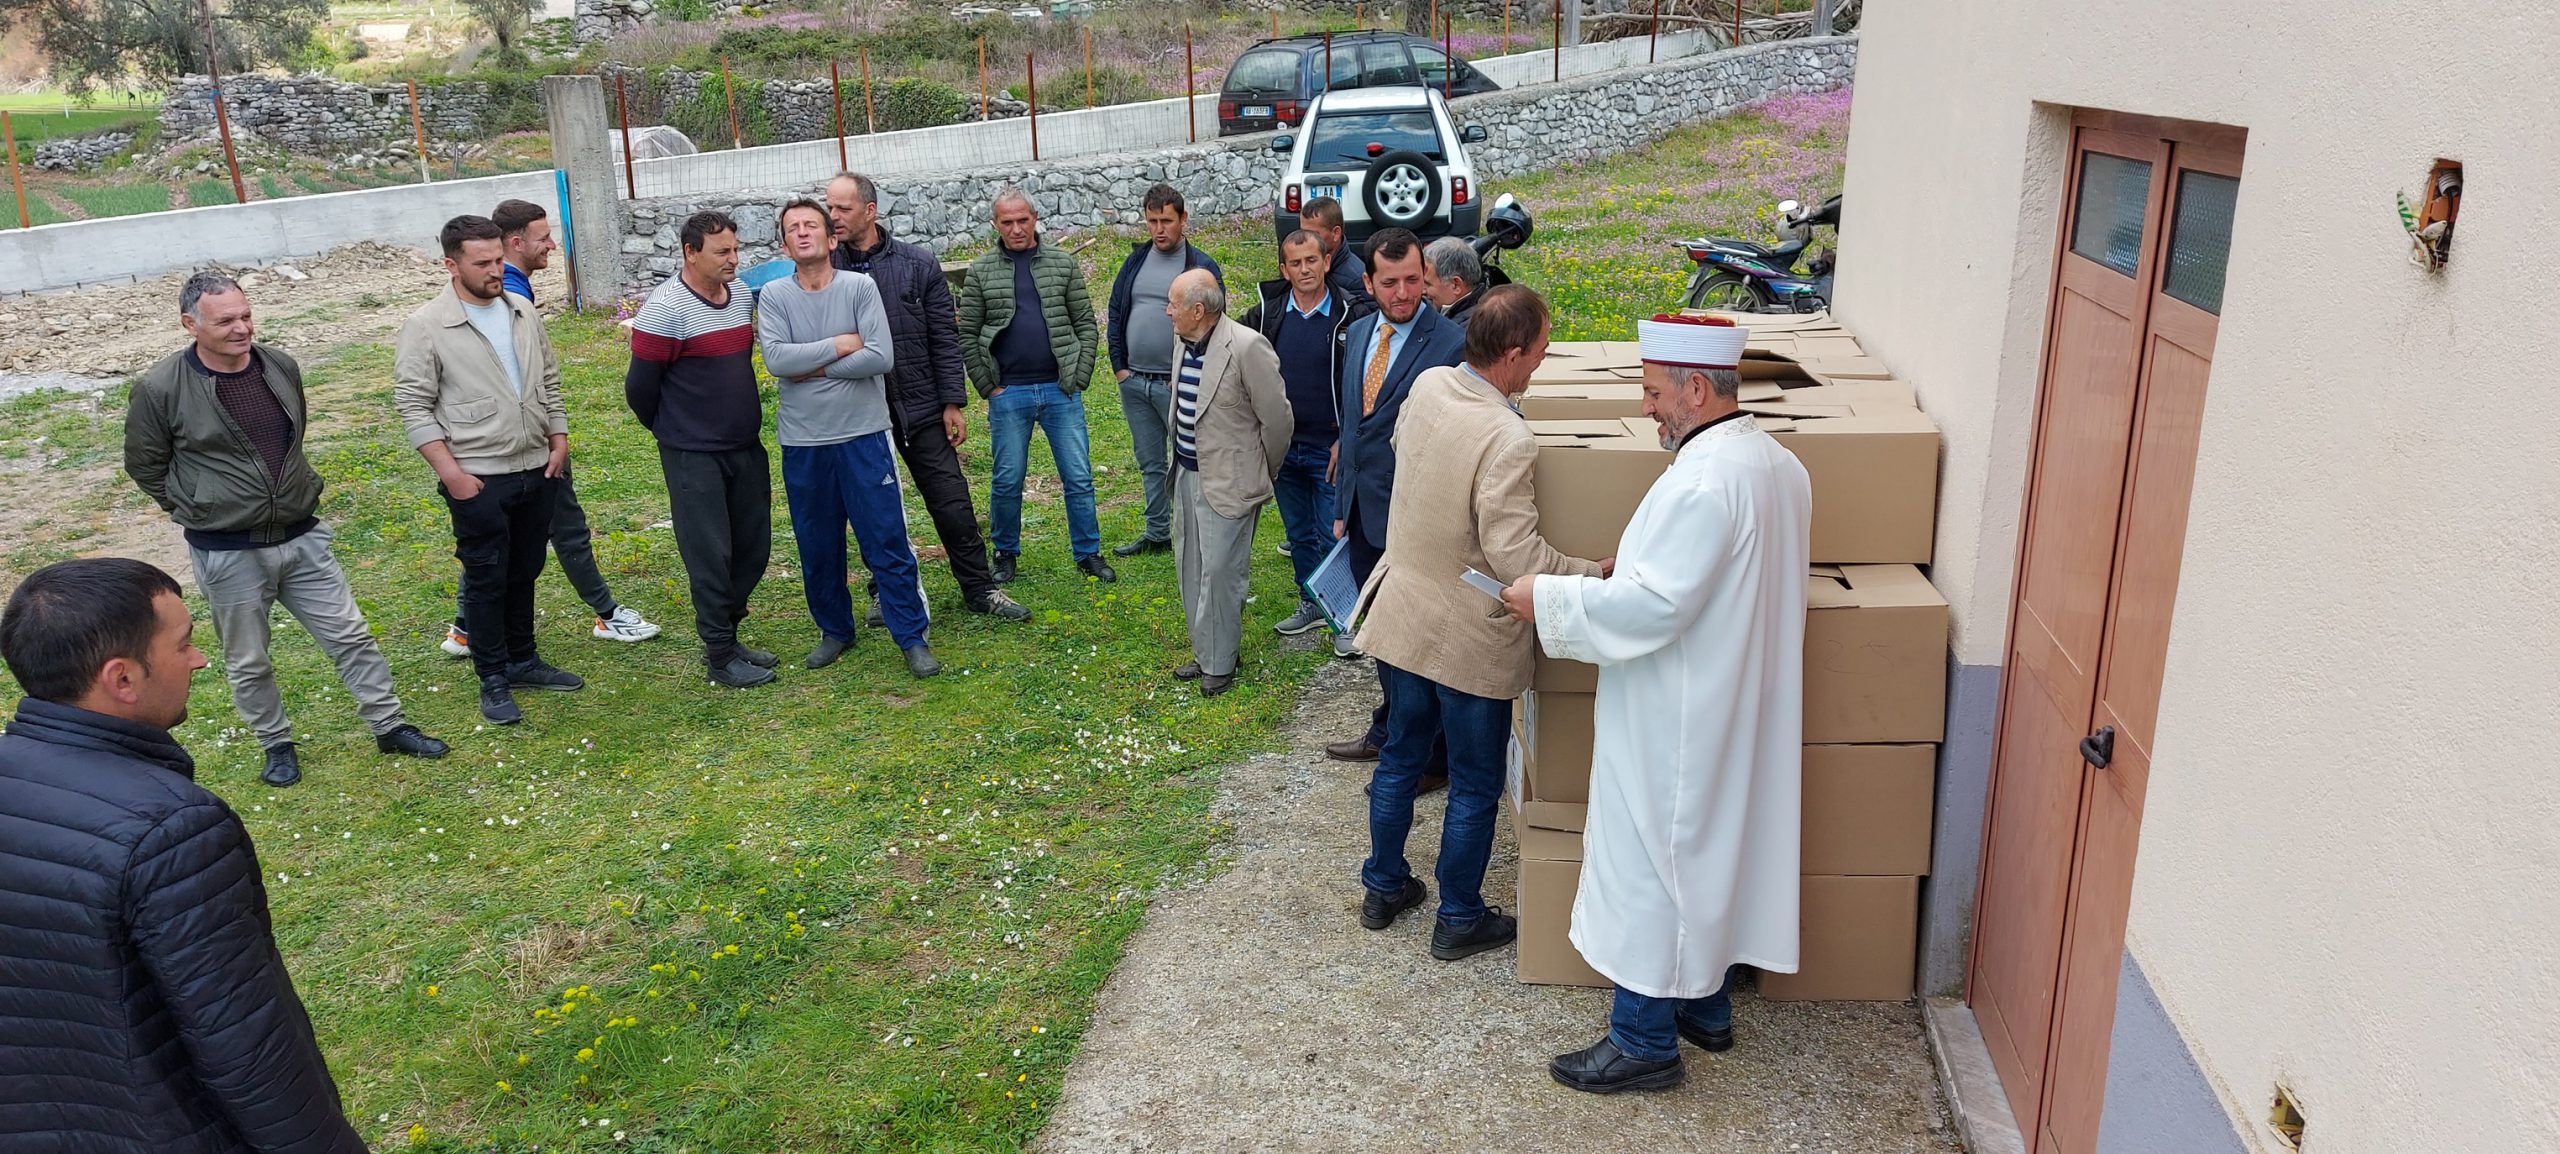 Myftinia Shkodër vazhdon shpërndarjen e pakove të Ramazanit për shtresat në nevojë